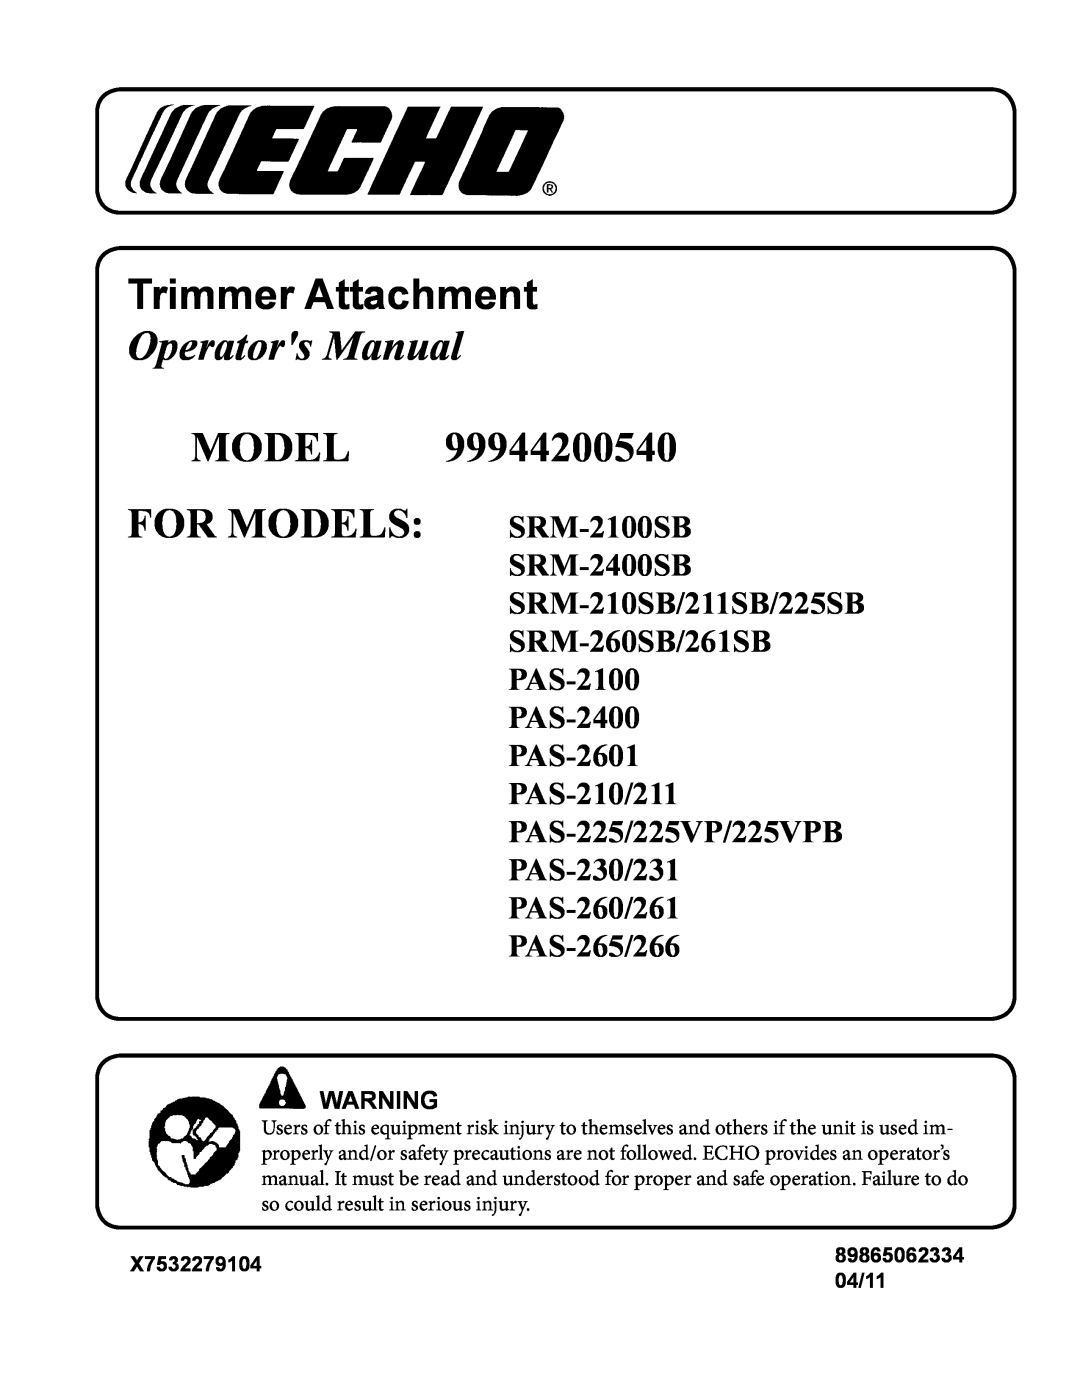 Echo 99944200540 manual X7532279104, 04/11, Trimmer Attachment, Operators Manual, MODEL FOR MODELS SRM-2100SB, PAS-265/266 